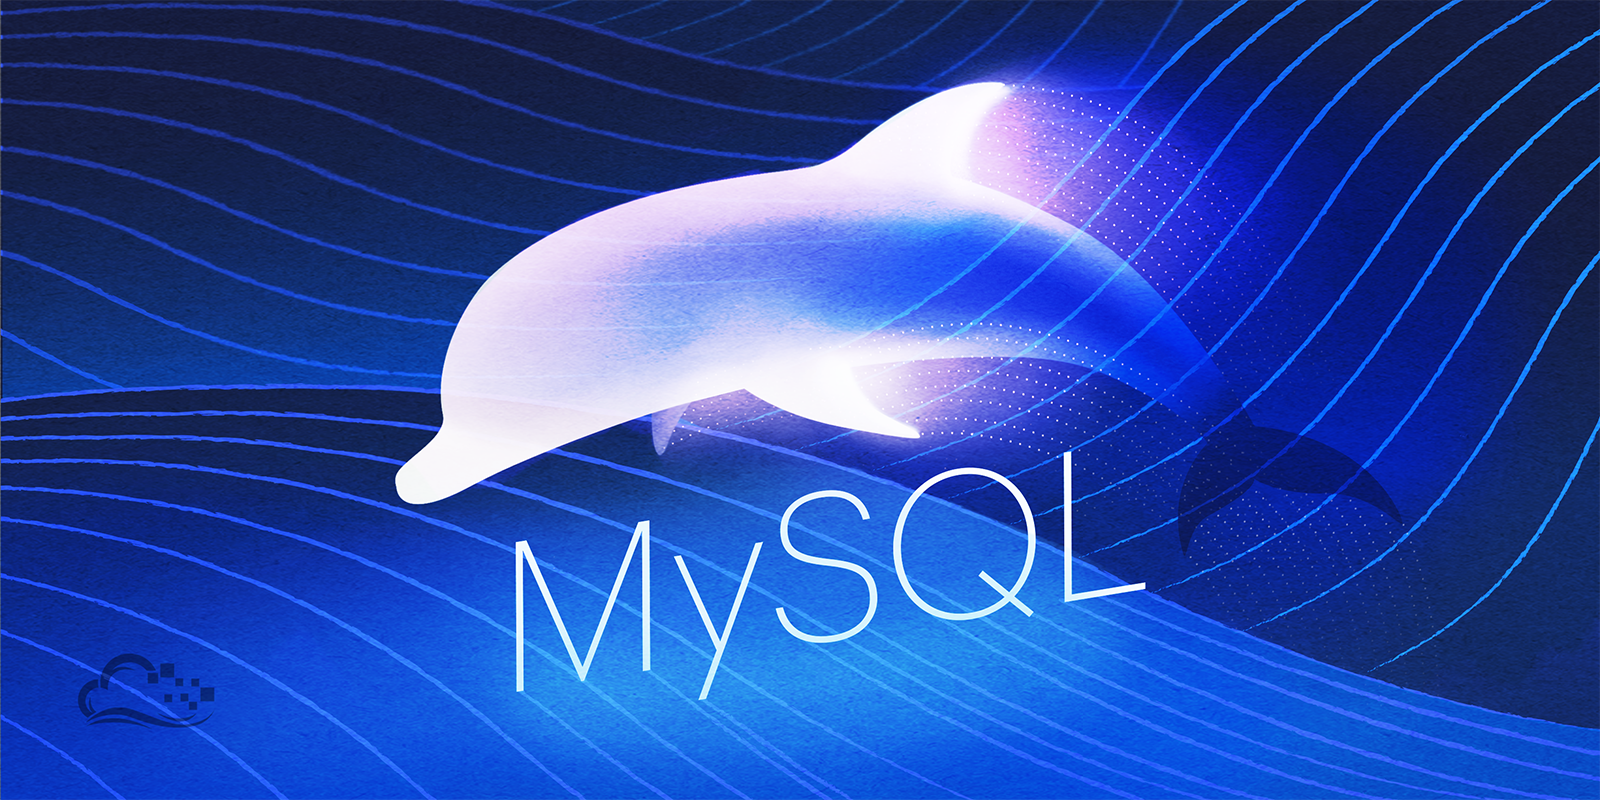 How To Install MySQL on Ubuntu 14.04